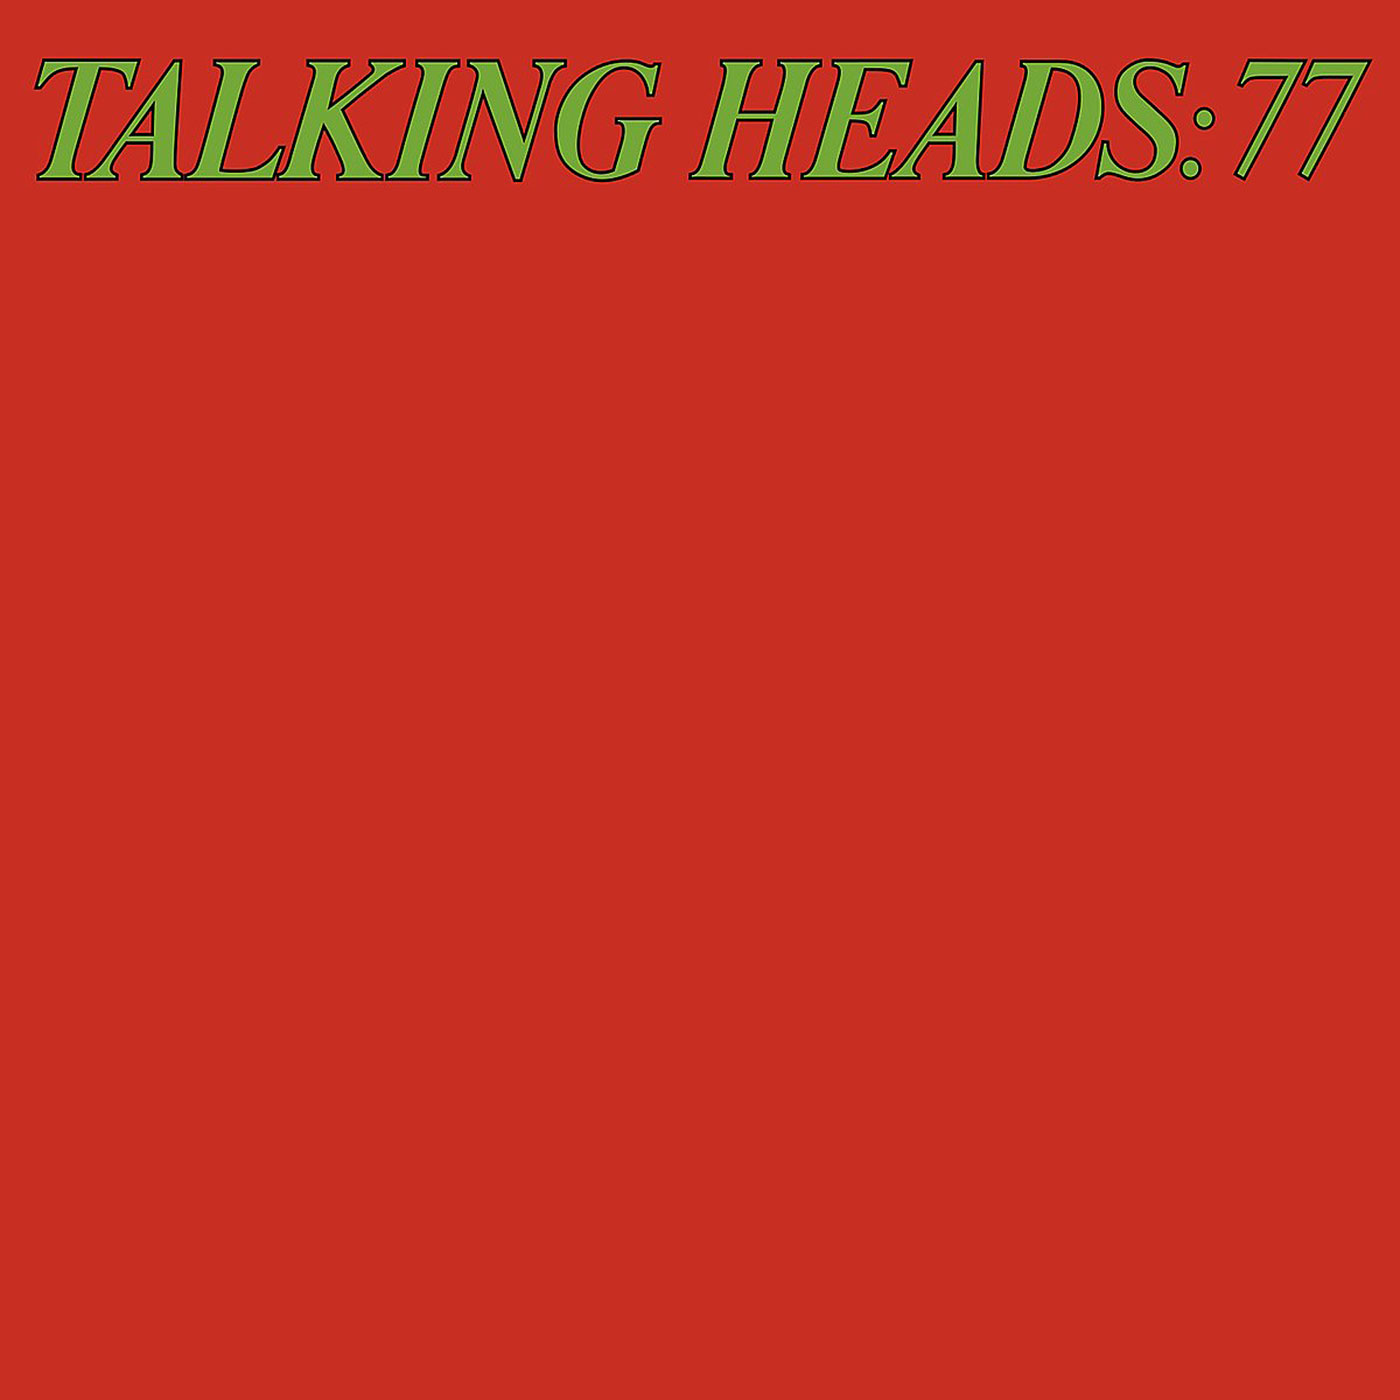 382 Talking Heads – Talking Heads 77